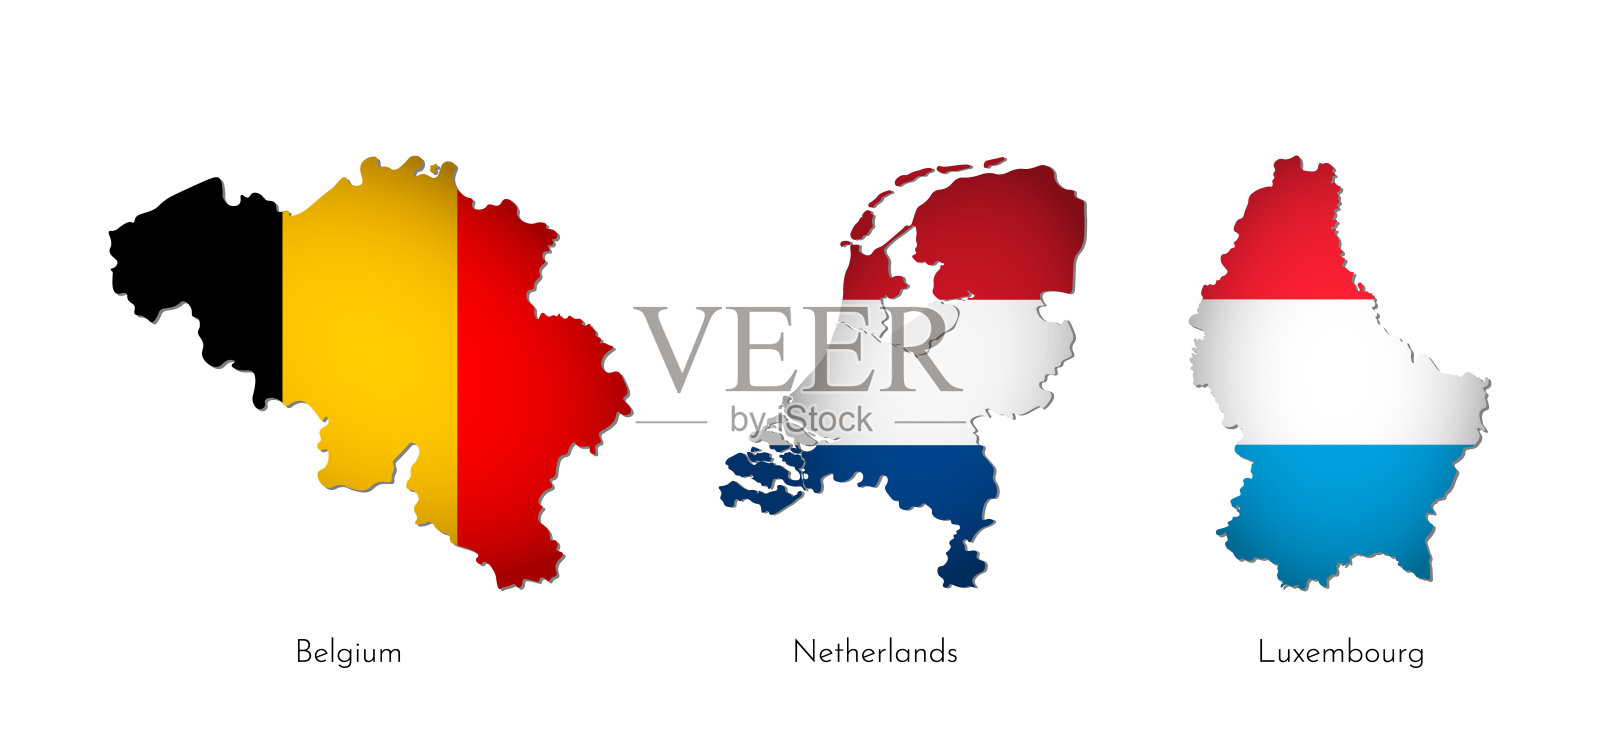 向量插图集孤立的轮廓比荷卢联盟地图(简化形状)。比利时、荷兰、卢森堡国旗。白色背景和国家名称插画图片素材